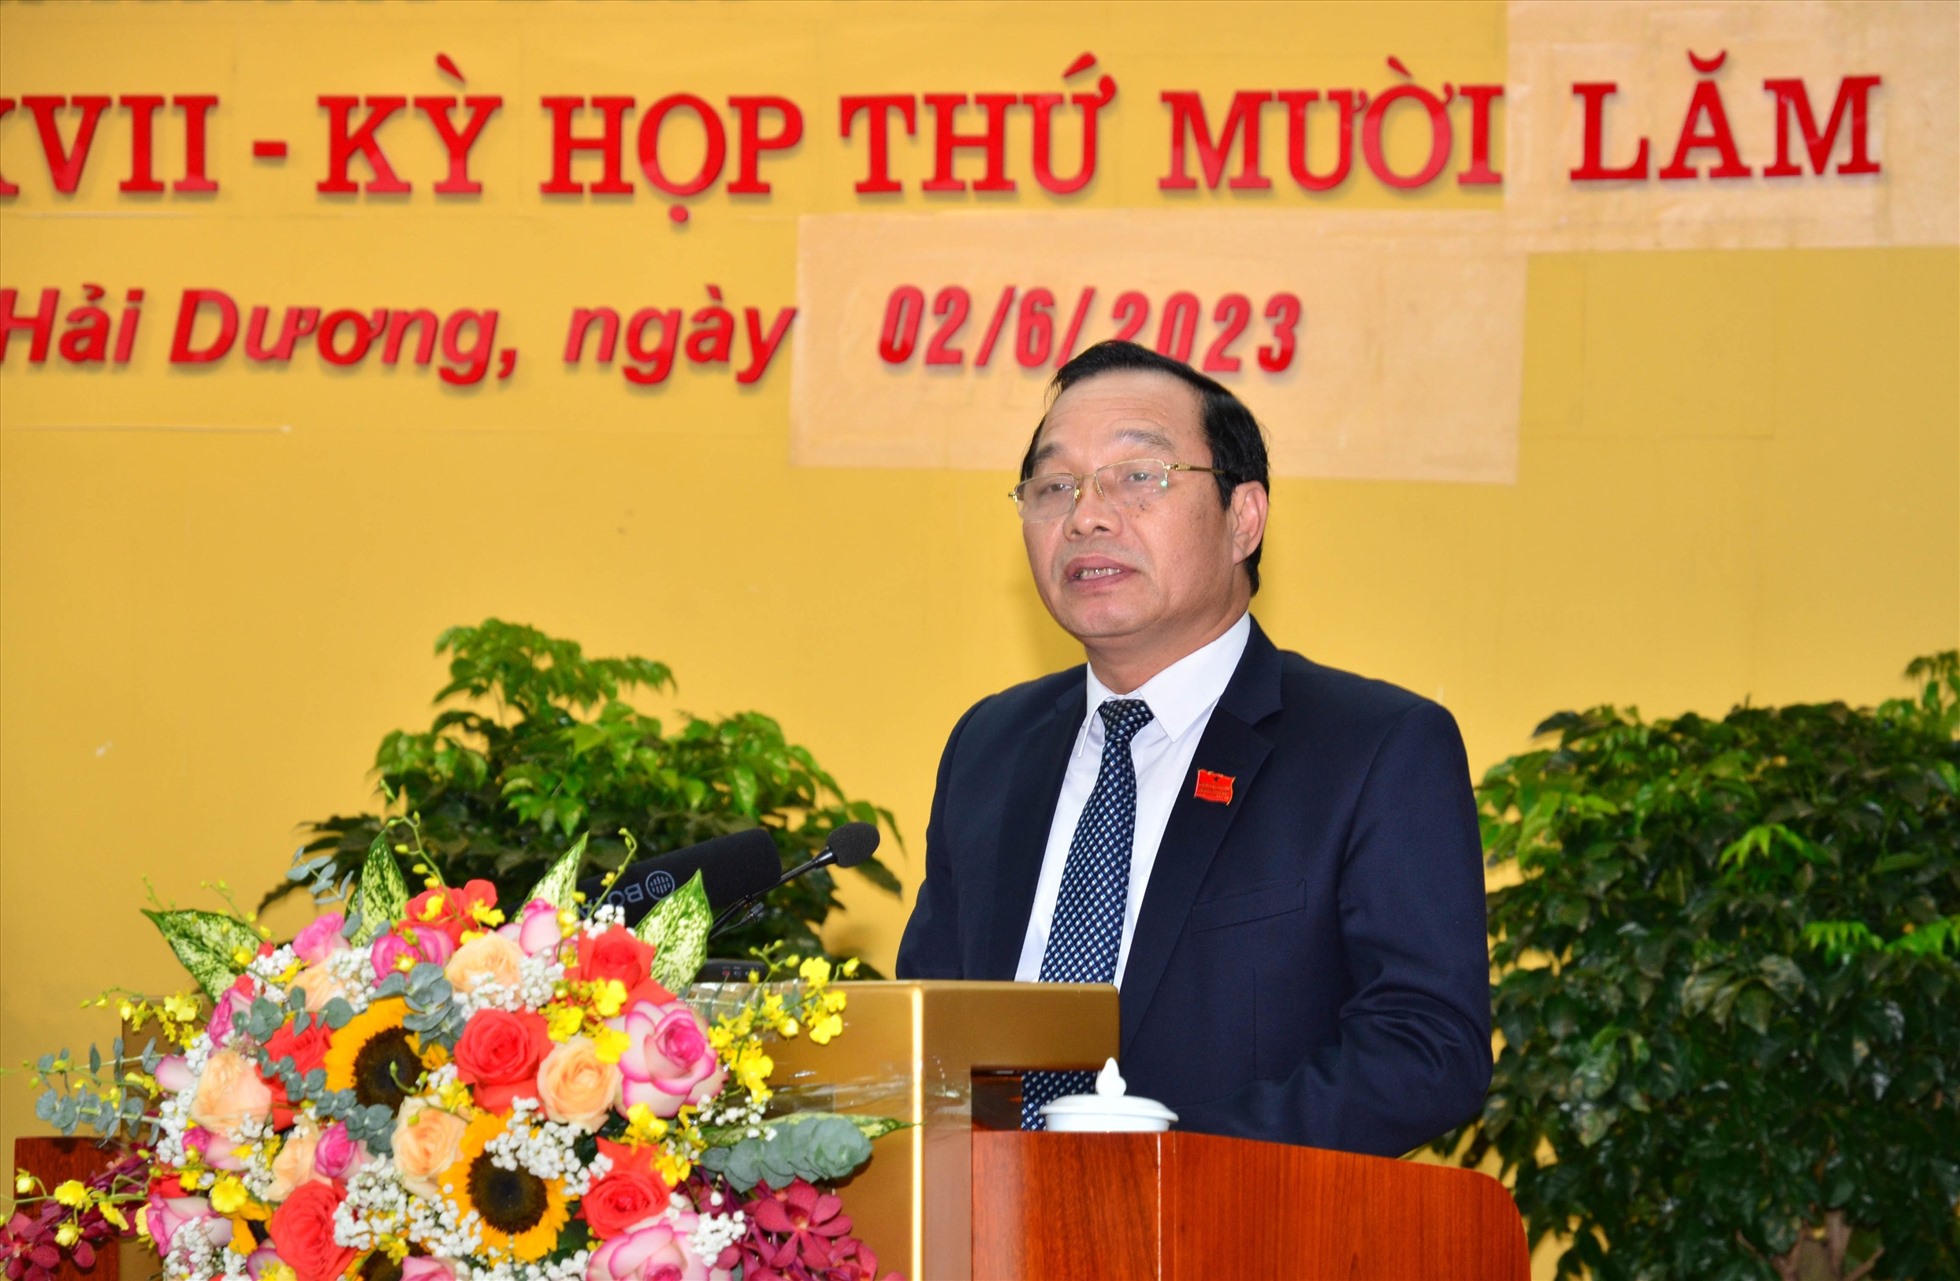 Tân Chủ tịch HĐND tỉnh Hải Dương phát biểu nhận nhiệm vụ. Ảnh: Cổng TTĐT tỉnh Hải Dương